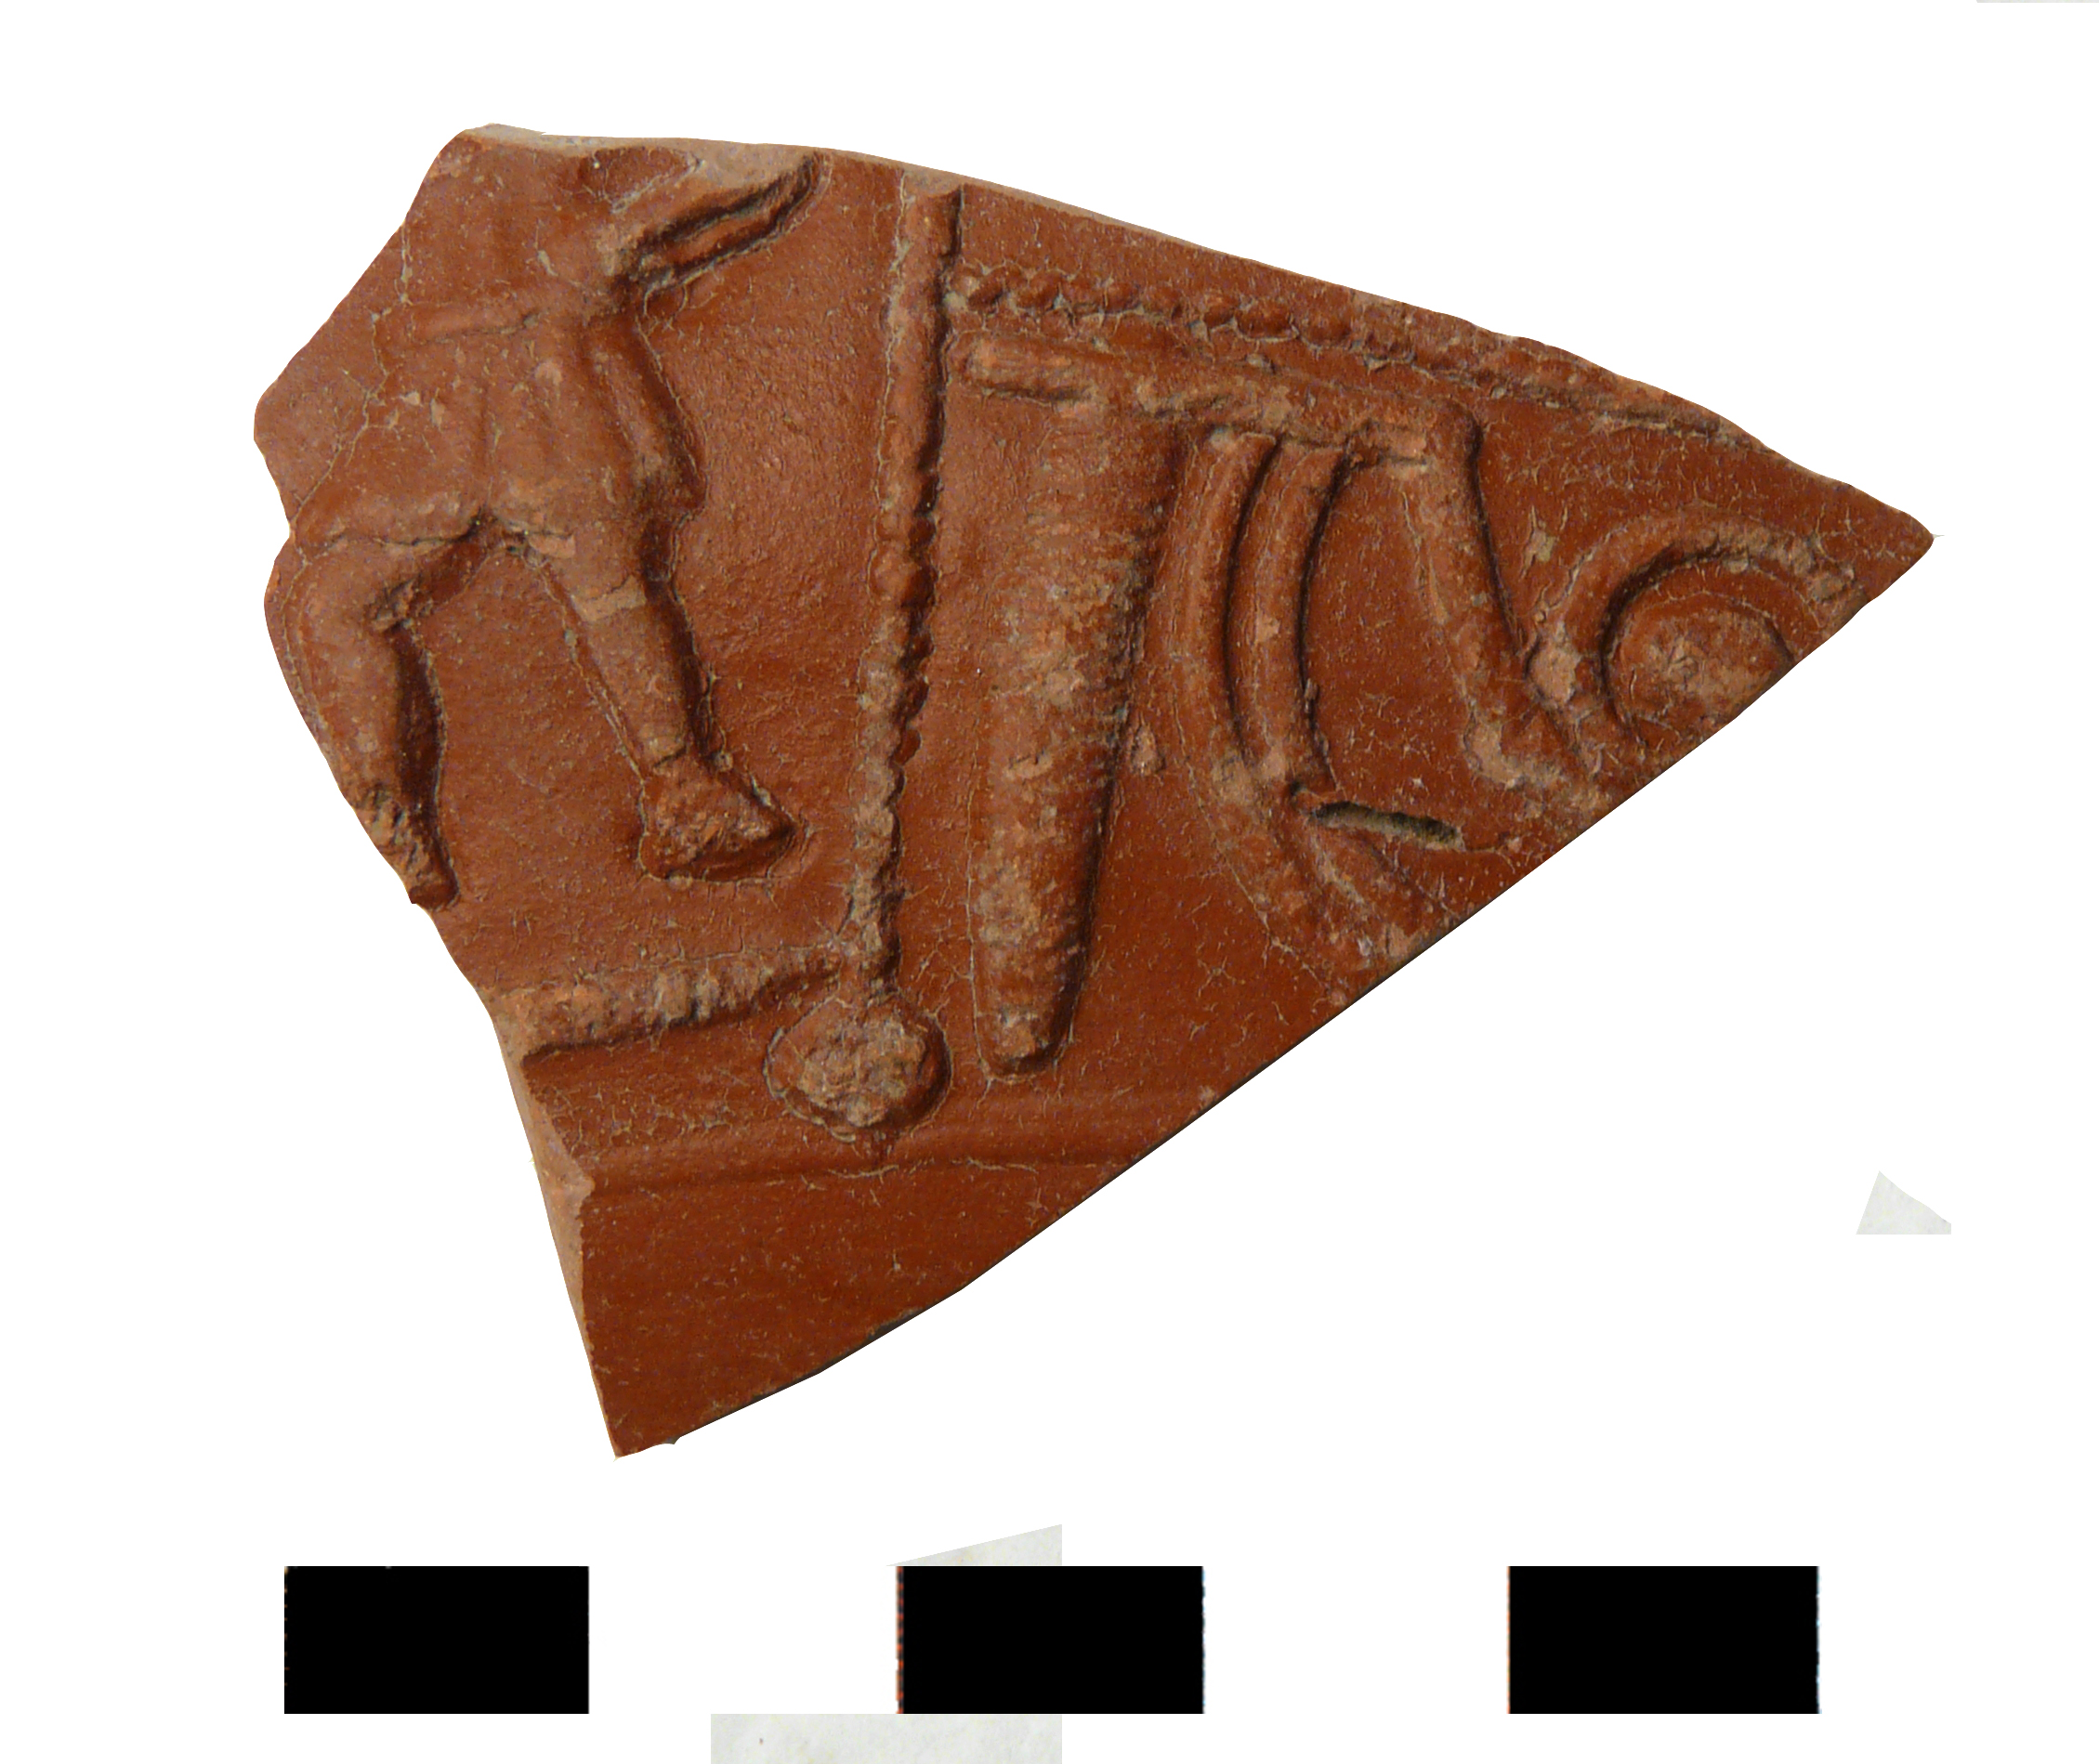 coppa/frammento, Dragendorff 37 - Gallia meridionale (La Graufesenque o Banassac) (sec. I d.C. - sec. II d.C)